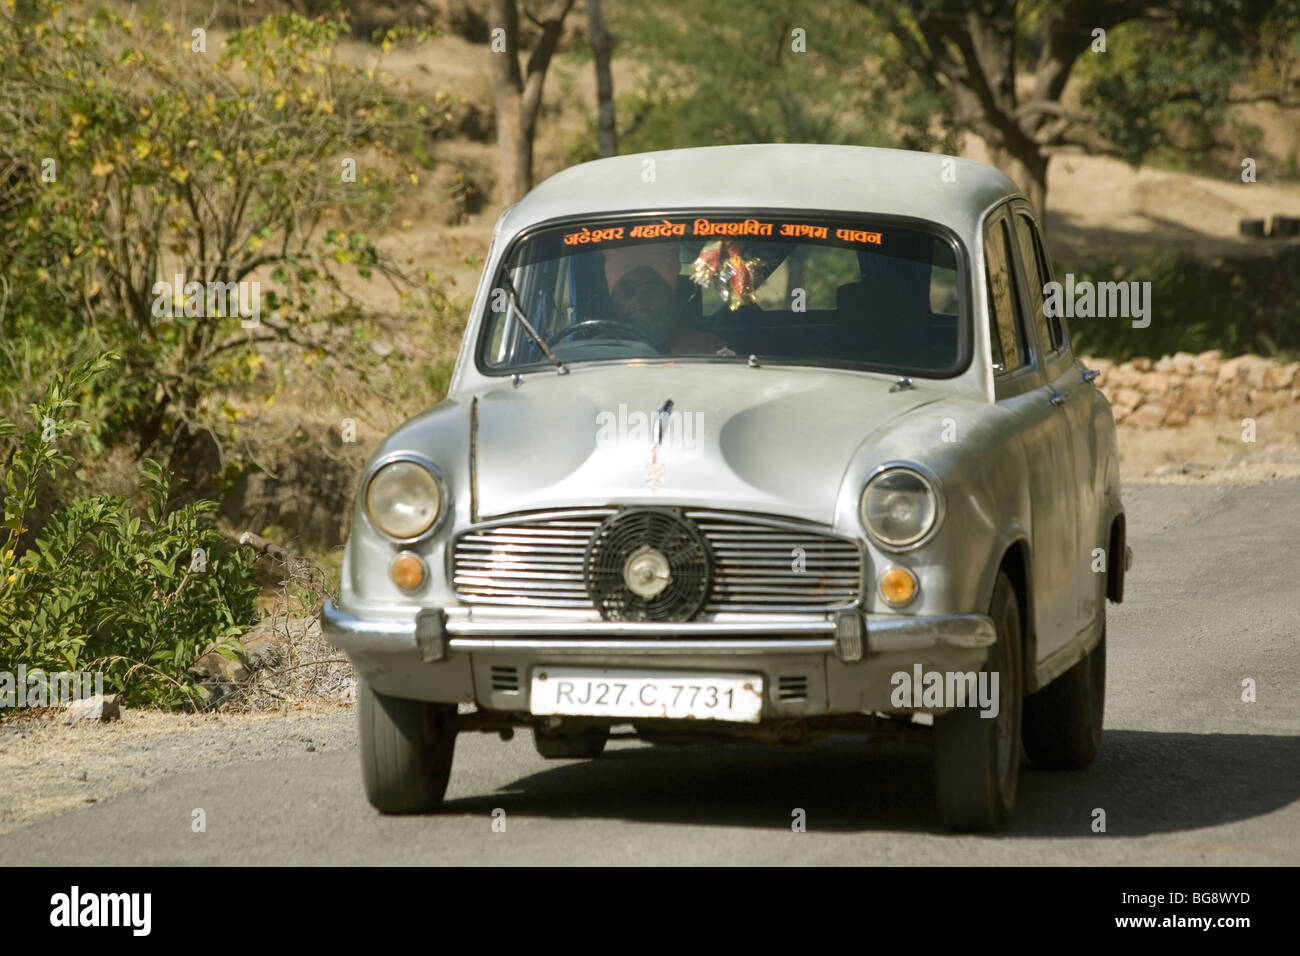 India Ambassador car Stock Photo